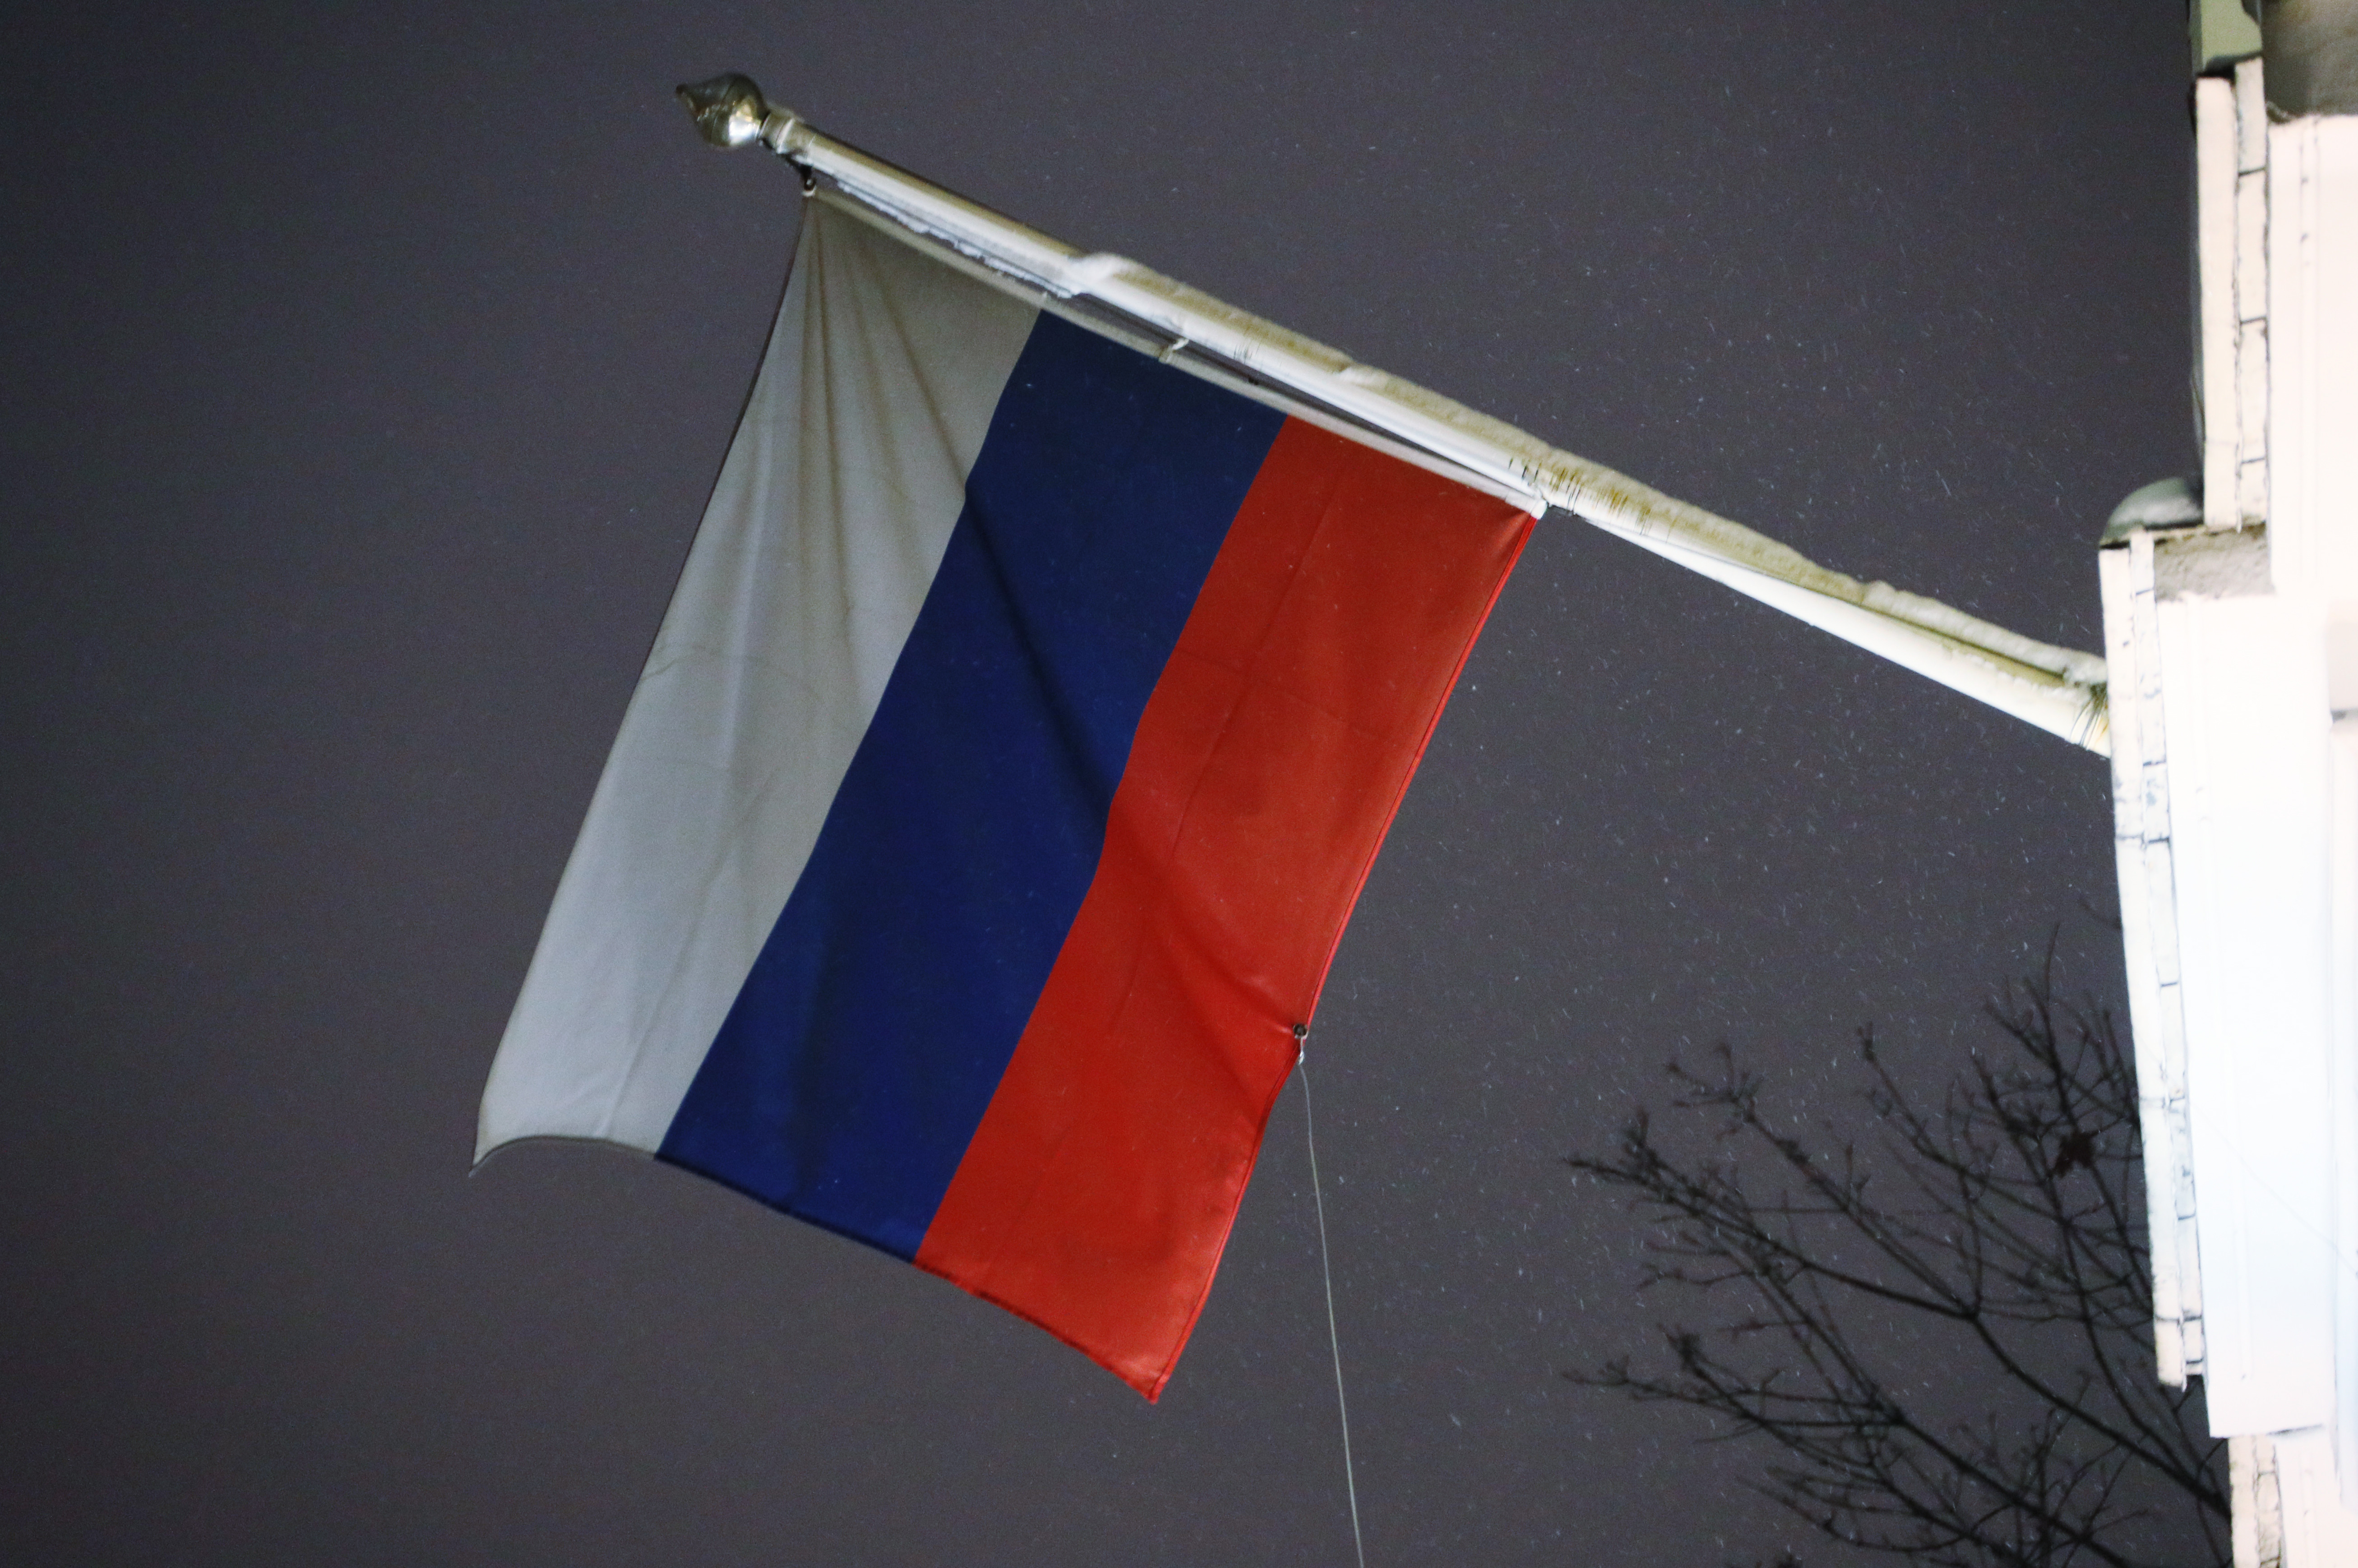 Как вешаются флаги. Флаг для съемки. Снимание флага с флагштока первая мировая. Флаг на посольстве Кении в Москве. Как правильно вешать флаги России и Москвы на зданиях фото.